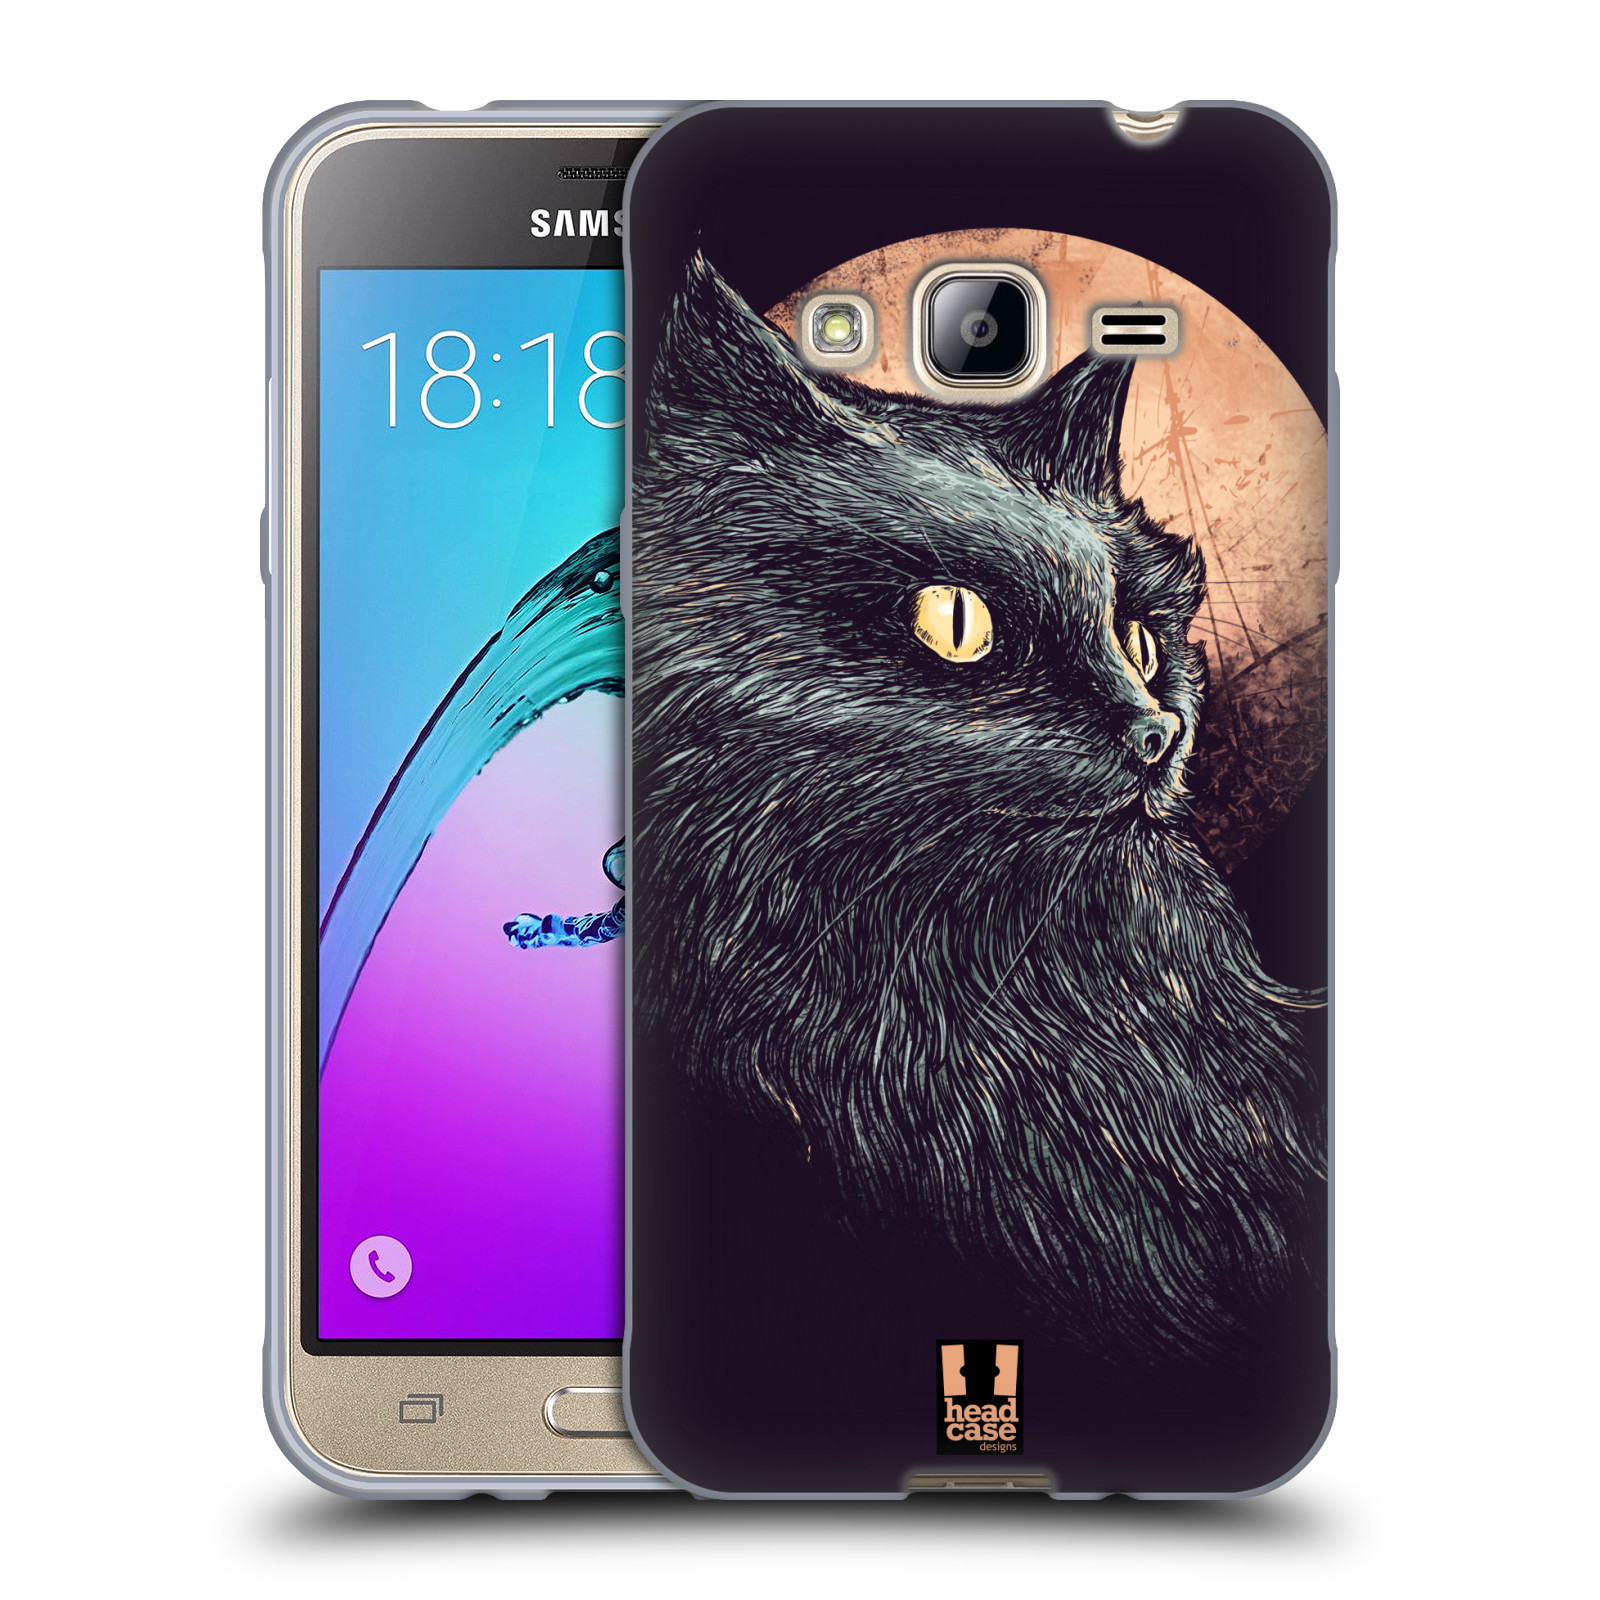 HEAD CASE silikonový obal na mobil Samsung Galaxy J3, J3 2016 vzor Gotická kočka oranžový měsíc